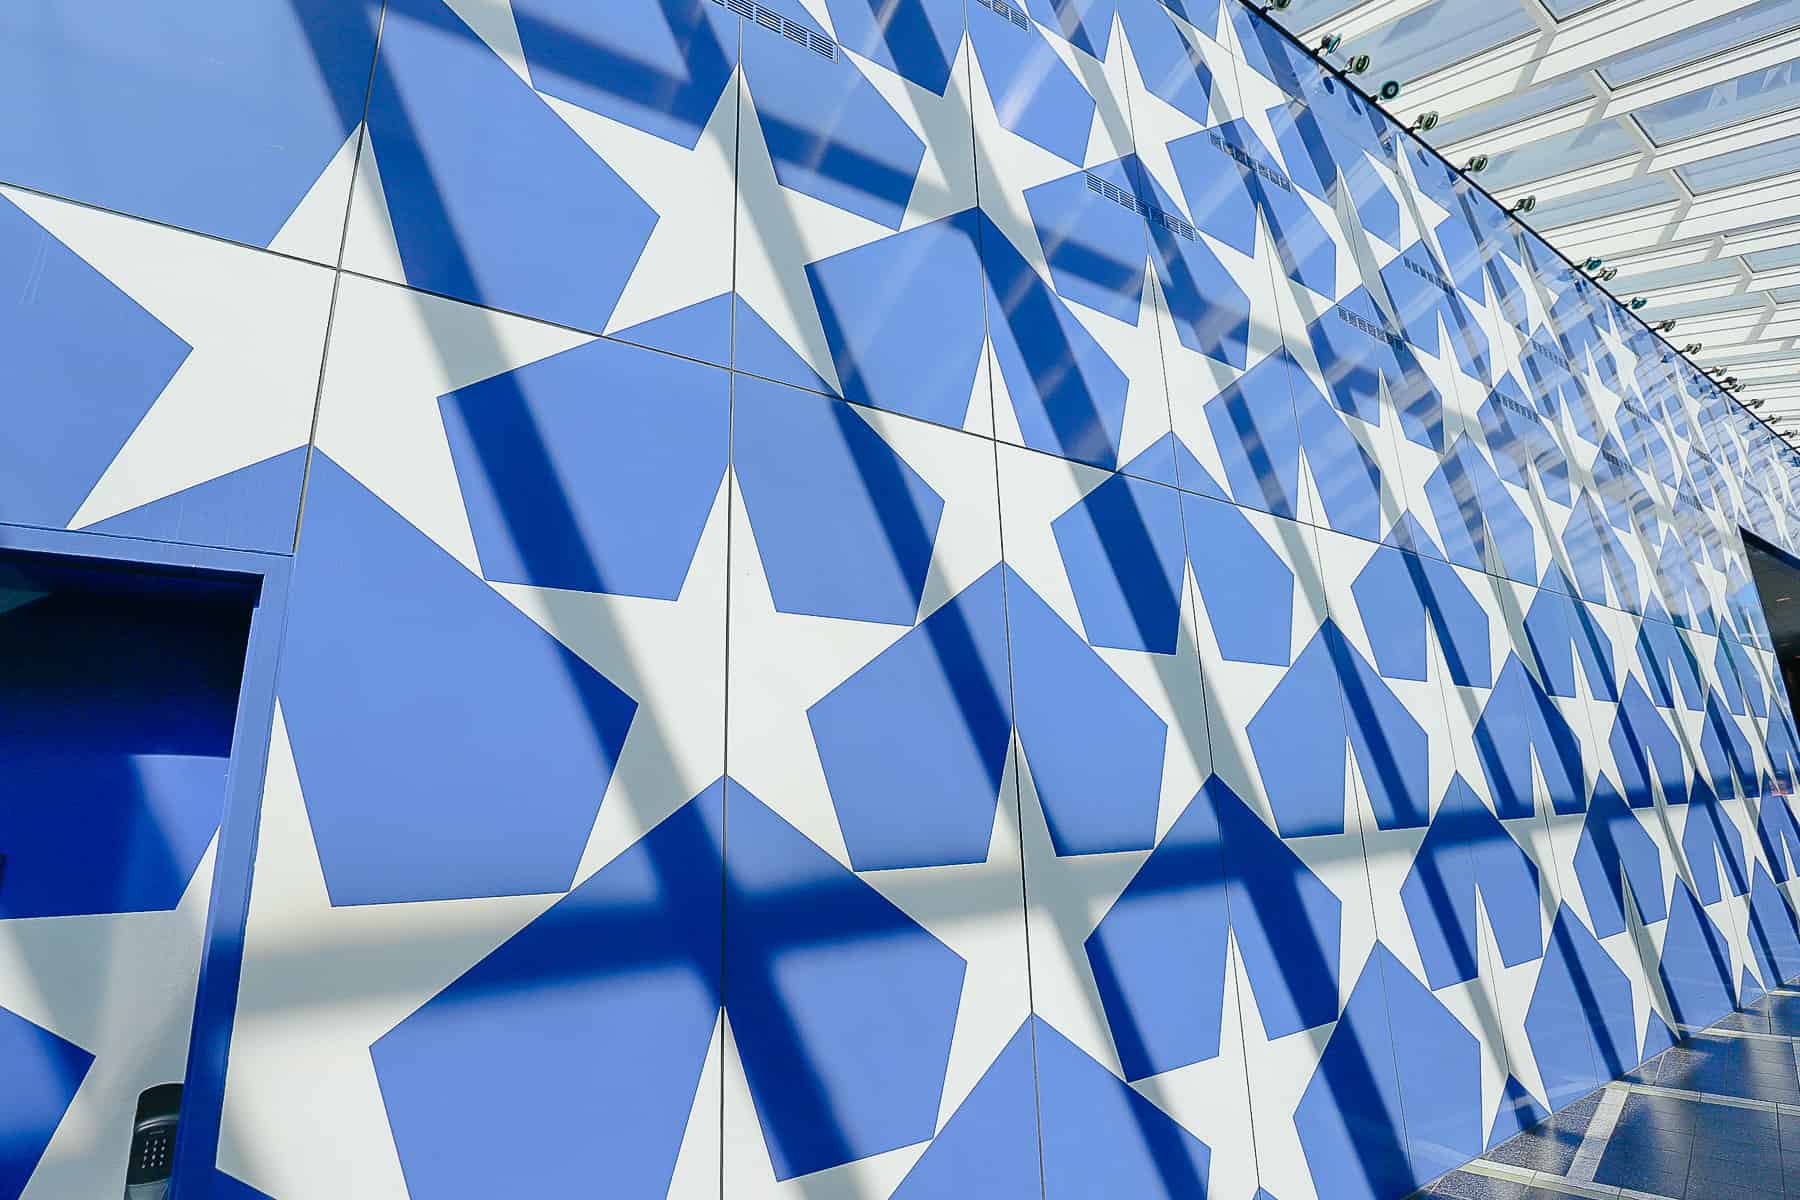 Blue Star Wall at Disney's All-Star Sports